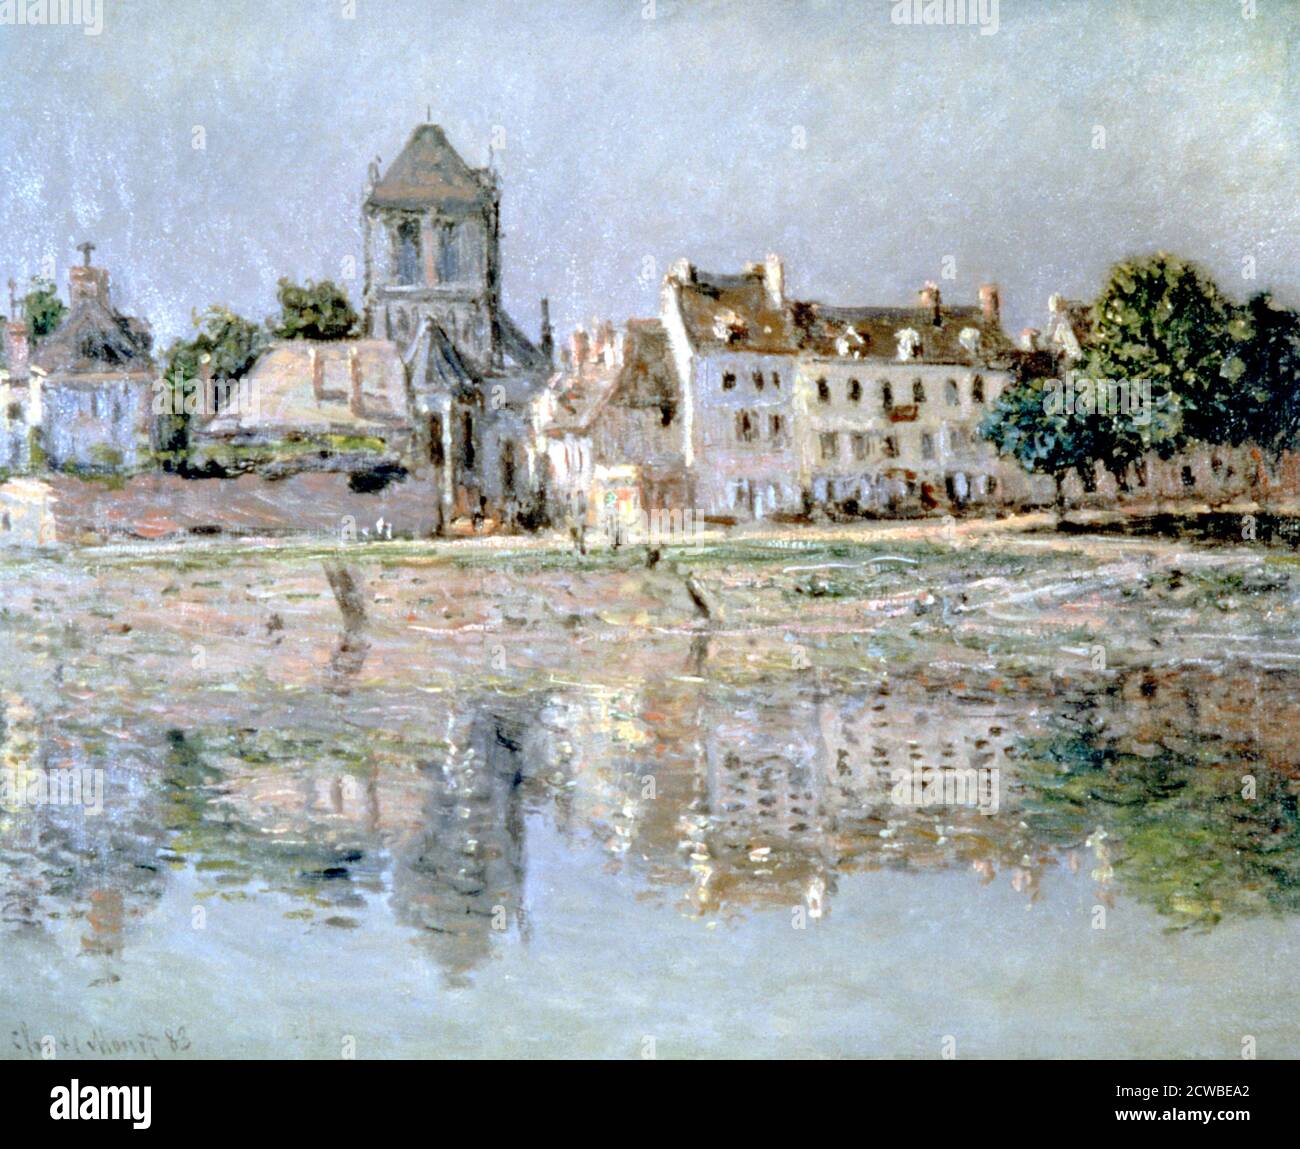 Par la rivière à Vernon, 1883. Artiste: Claude Monet. Monet était un peintre français, un fondateur de la peinture impressionniste française et le praticien le plus cohérent et le plus prolifique de la philosophie des mouvements. Banque D'Images